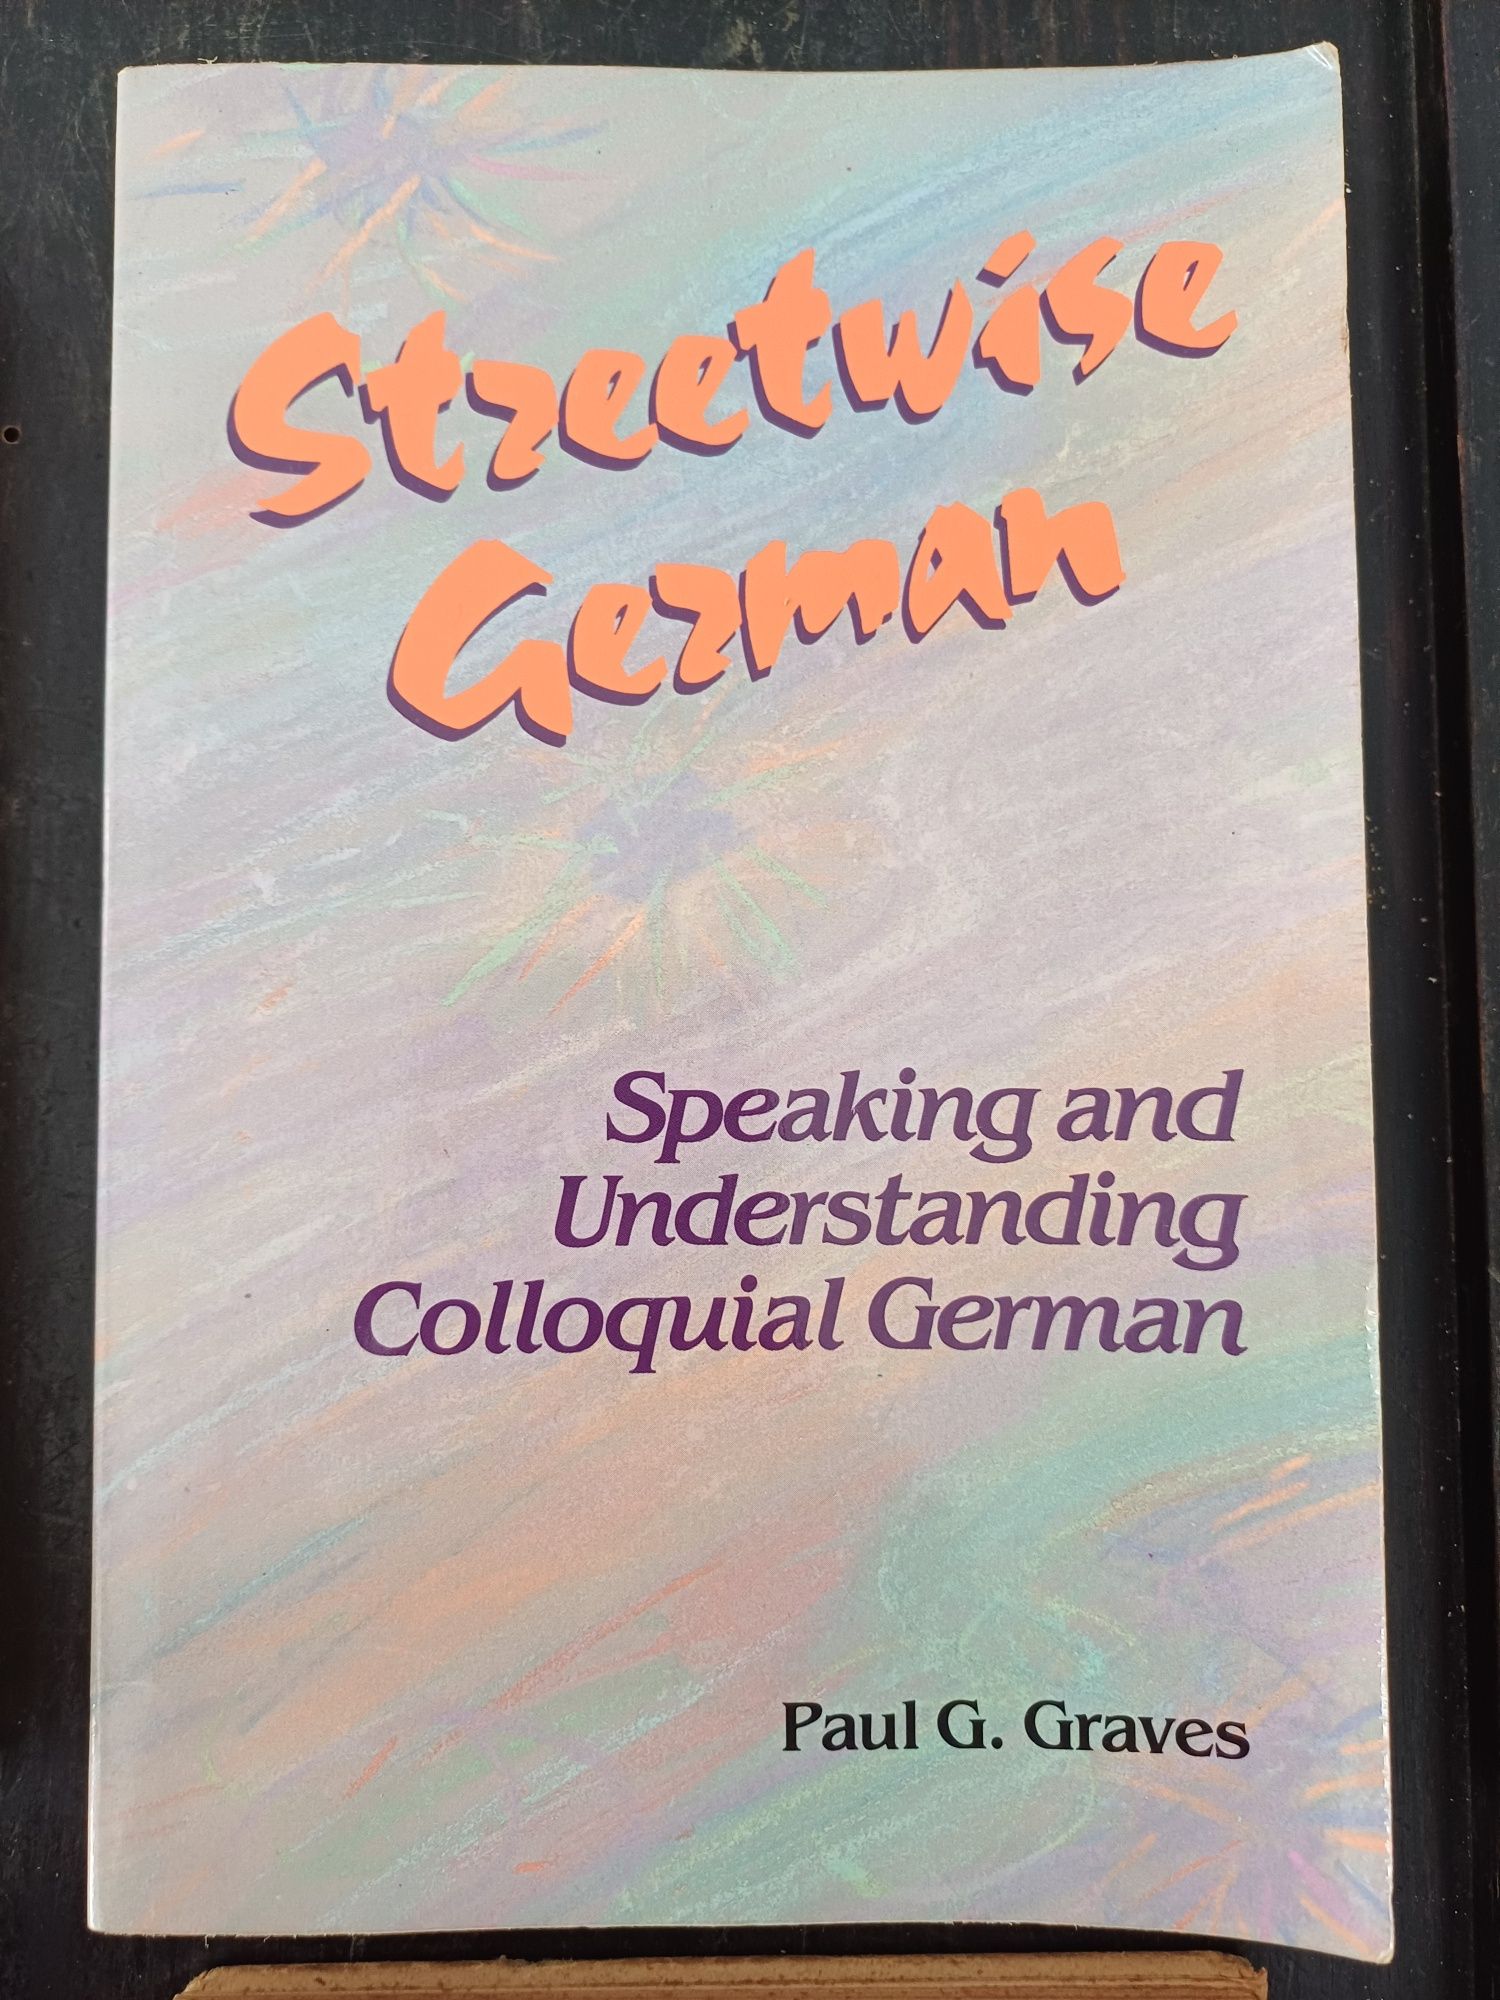 Streetwise German - Speaking and understanding colloquial german